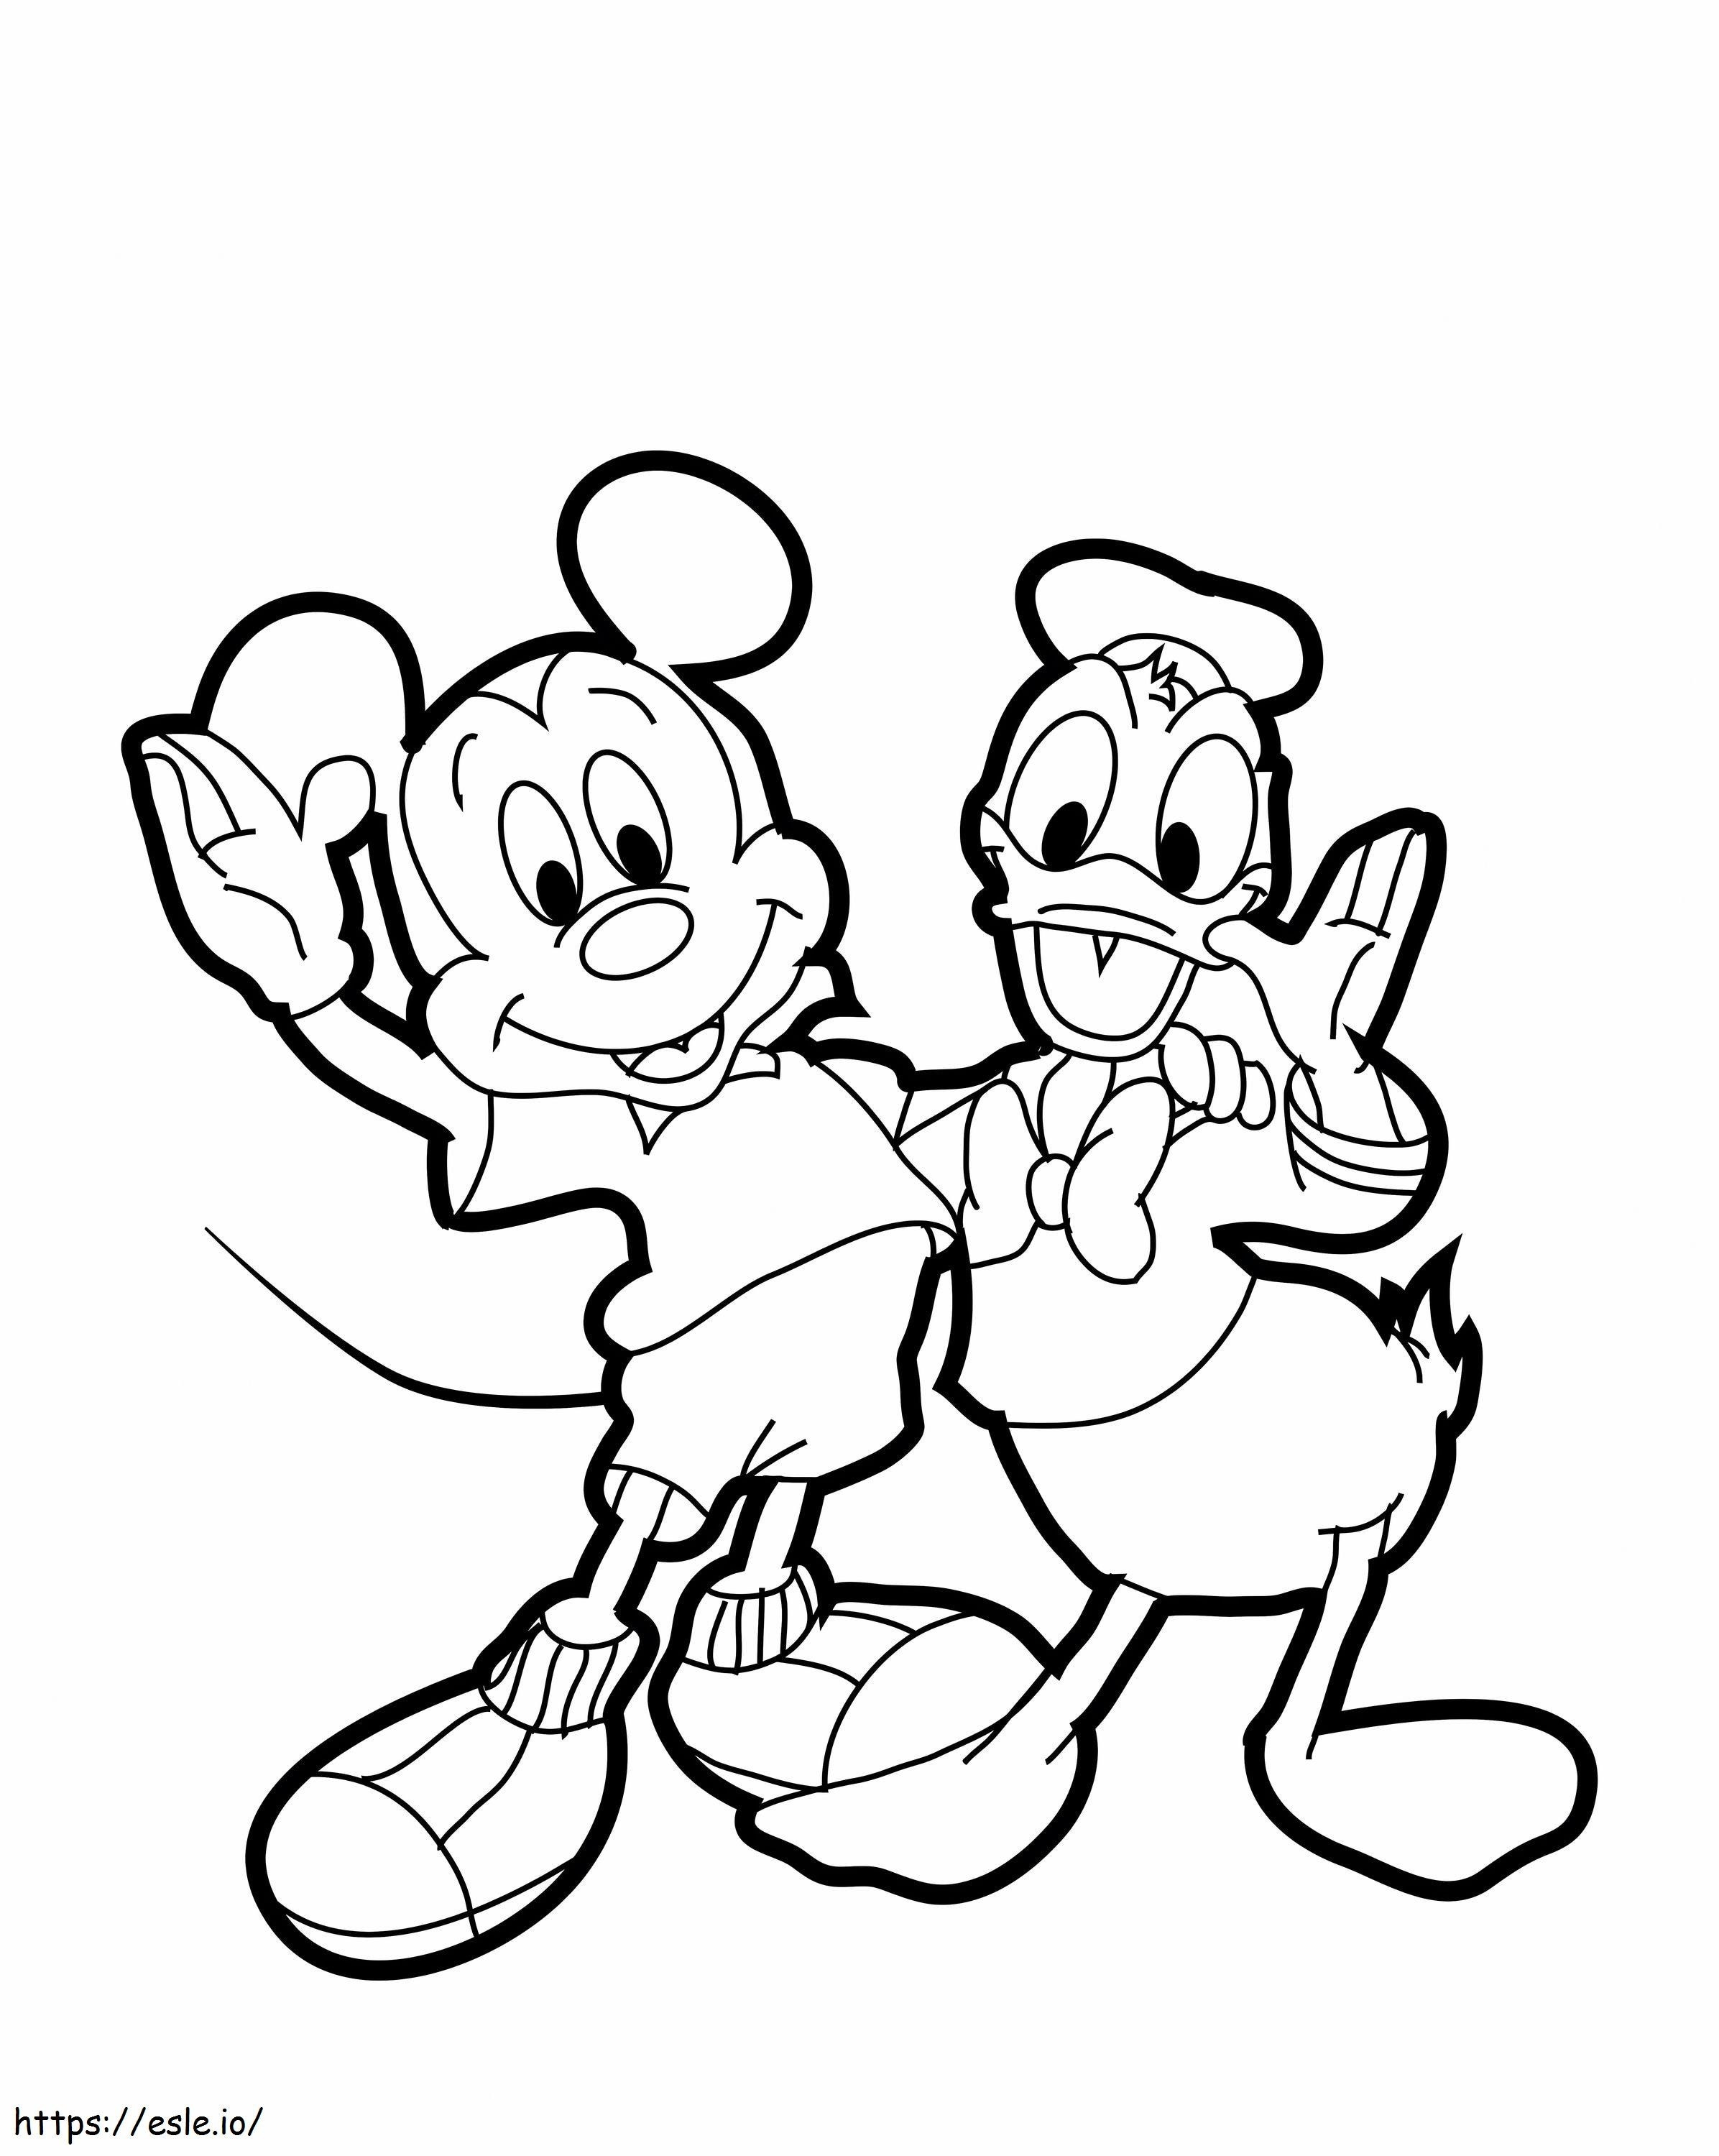 1539922258 Donald Duck desenat Mickey Mouse 530605 6841460 de colorat